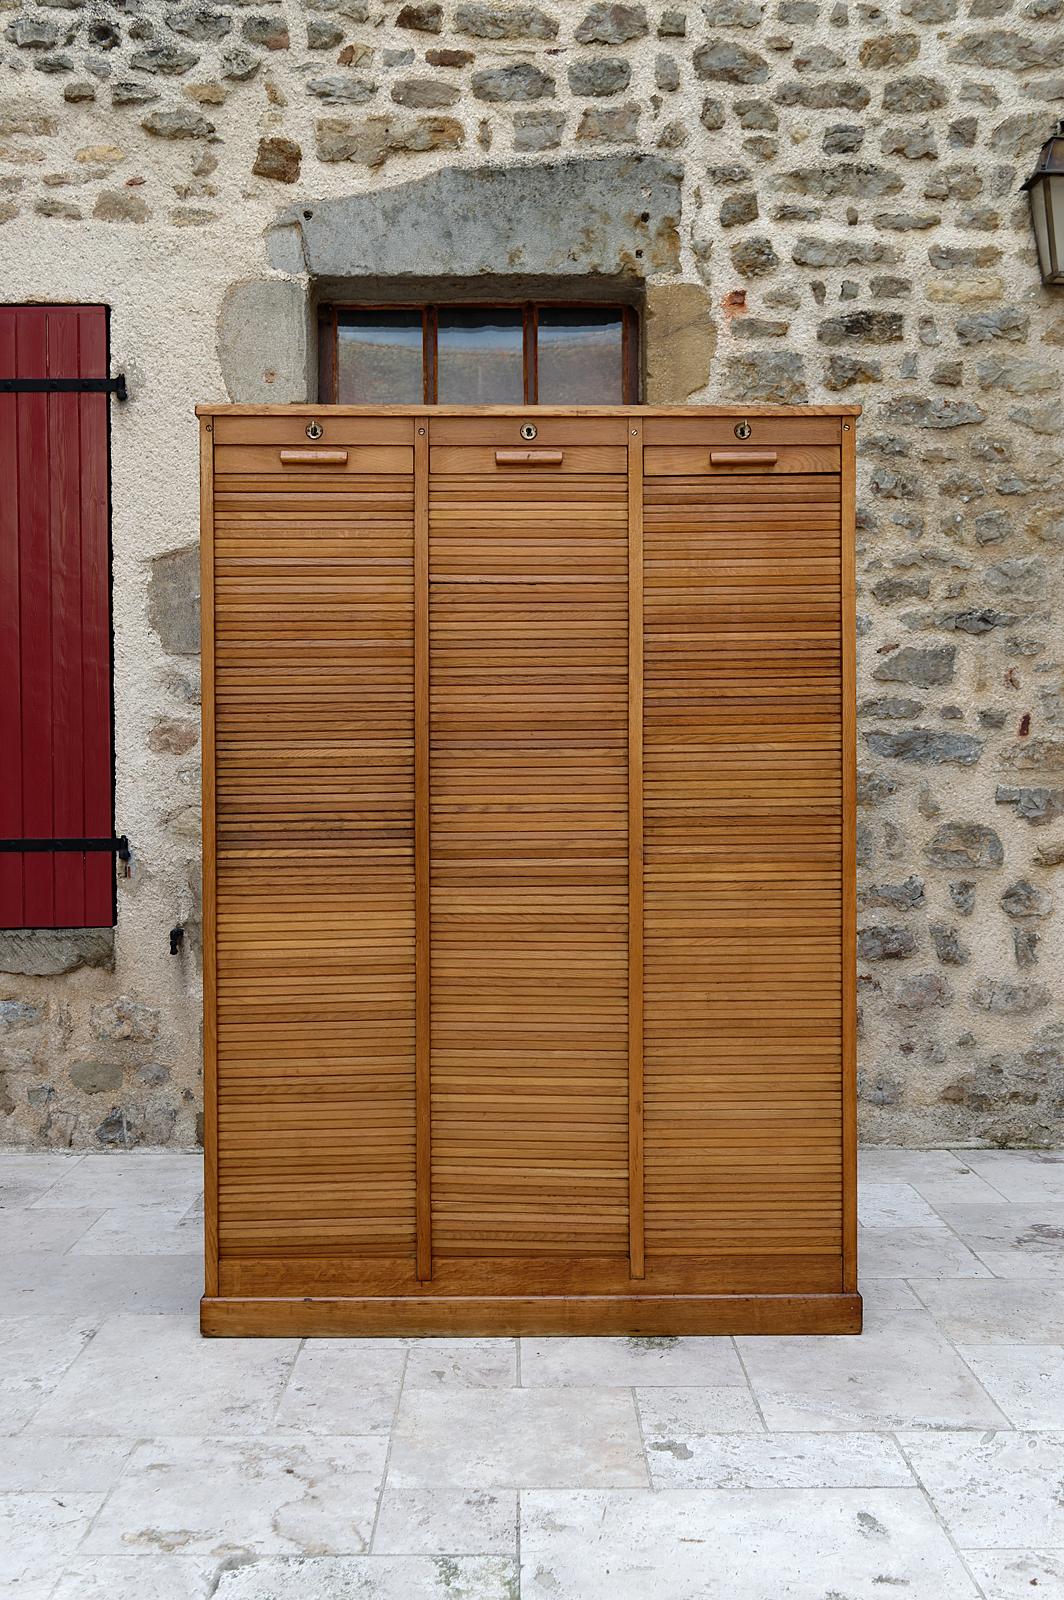 Importante armoire à armature vitrée / triple notary cabinet, France, vers 1900

Grand meuble professionnel en chêne, composé de 3 caissons fermant avec des rideaux. A l'intérieur, de nombreuses étagères modulables.

Cabinet initialement destiné au